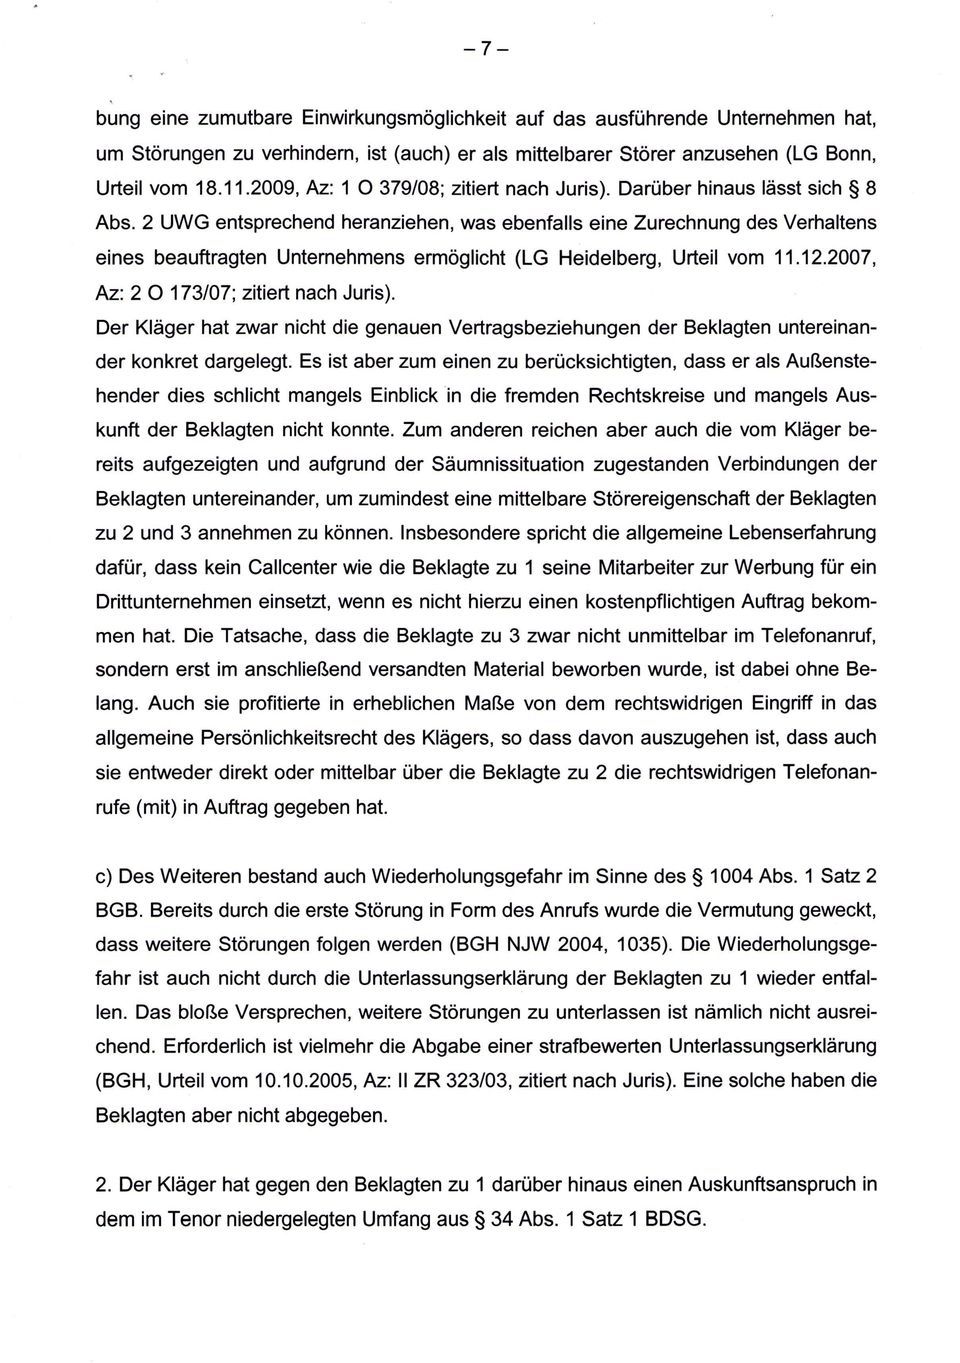 2 UWG entsprechend heranziehen, was ebenfalls eine Zurechnung des Verhaltens eines beauftragten Unternehmens ermöglicht (LG Heidelberg, Urteil vom 11.12.2007, Az: 2 0 173/07; zitiert nach Juris).